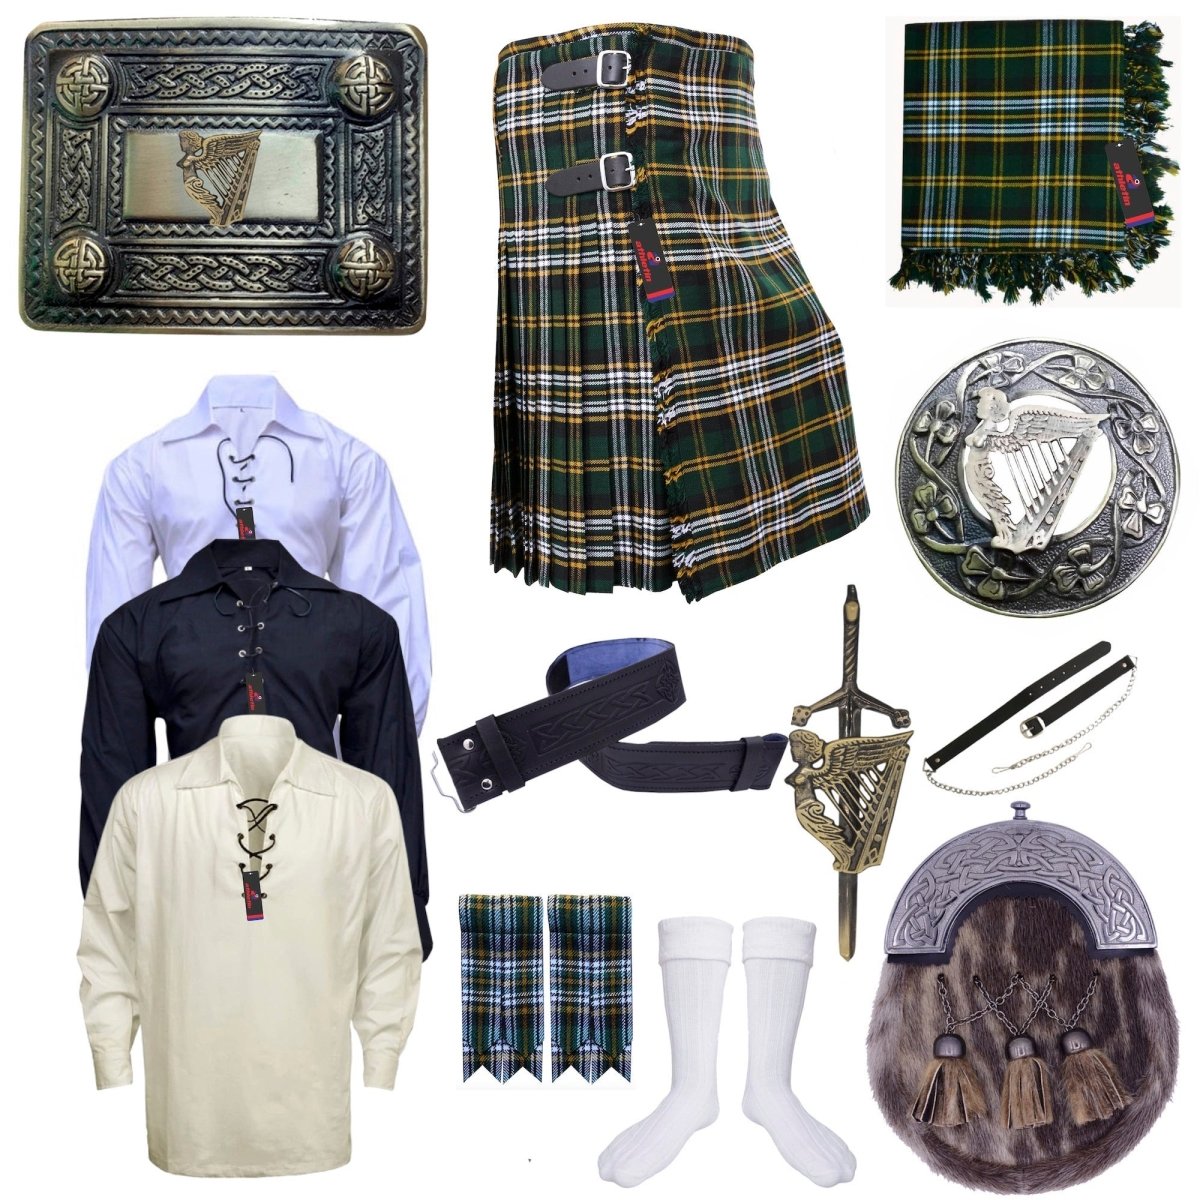 Heritage of Ireland Tartan Kilt Outfit